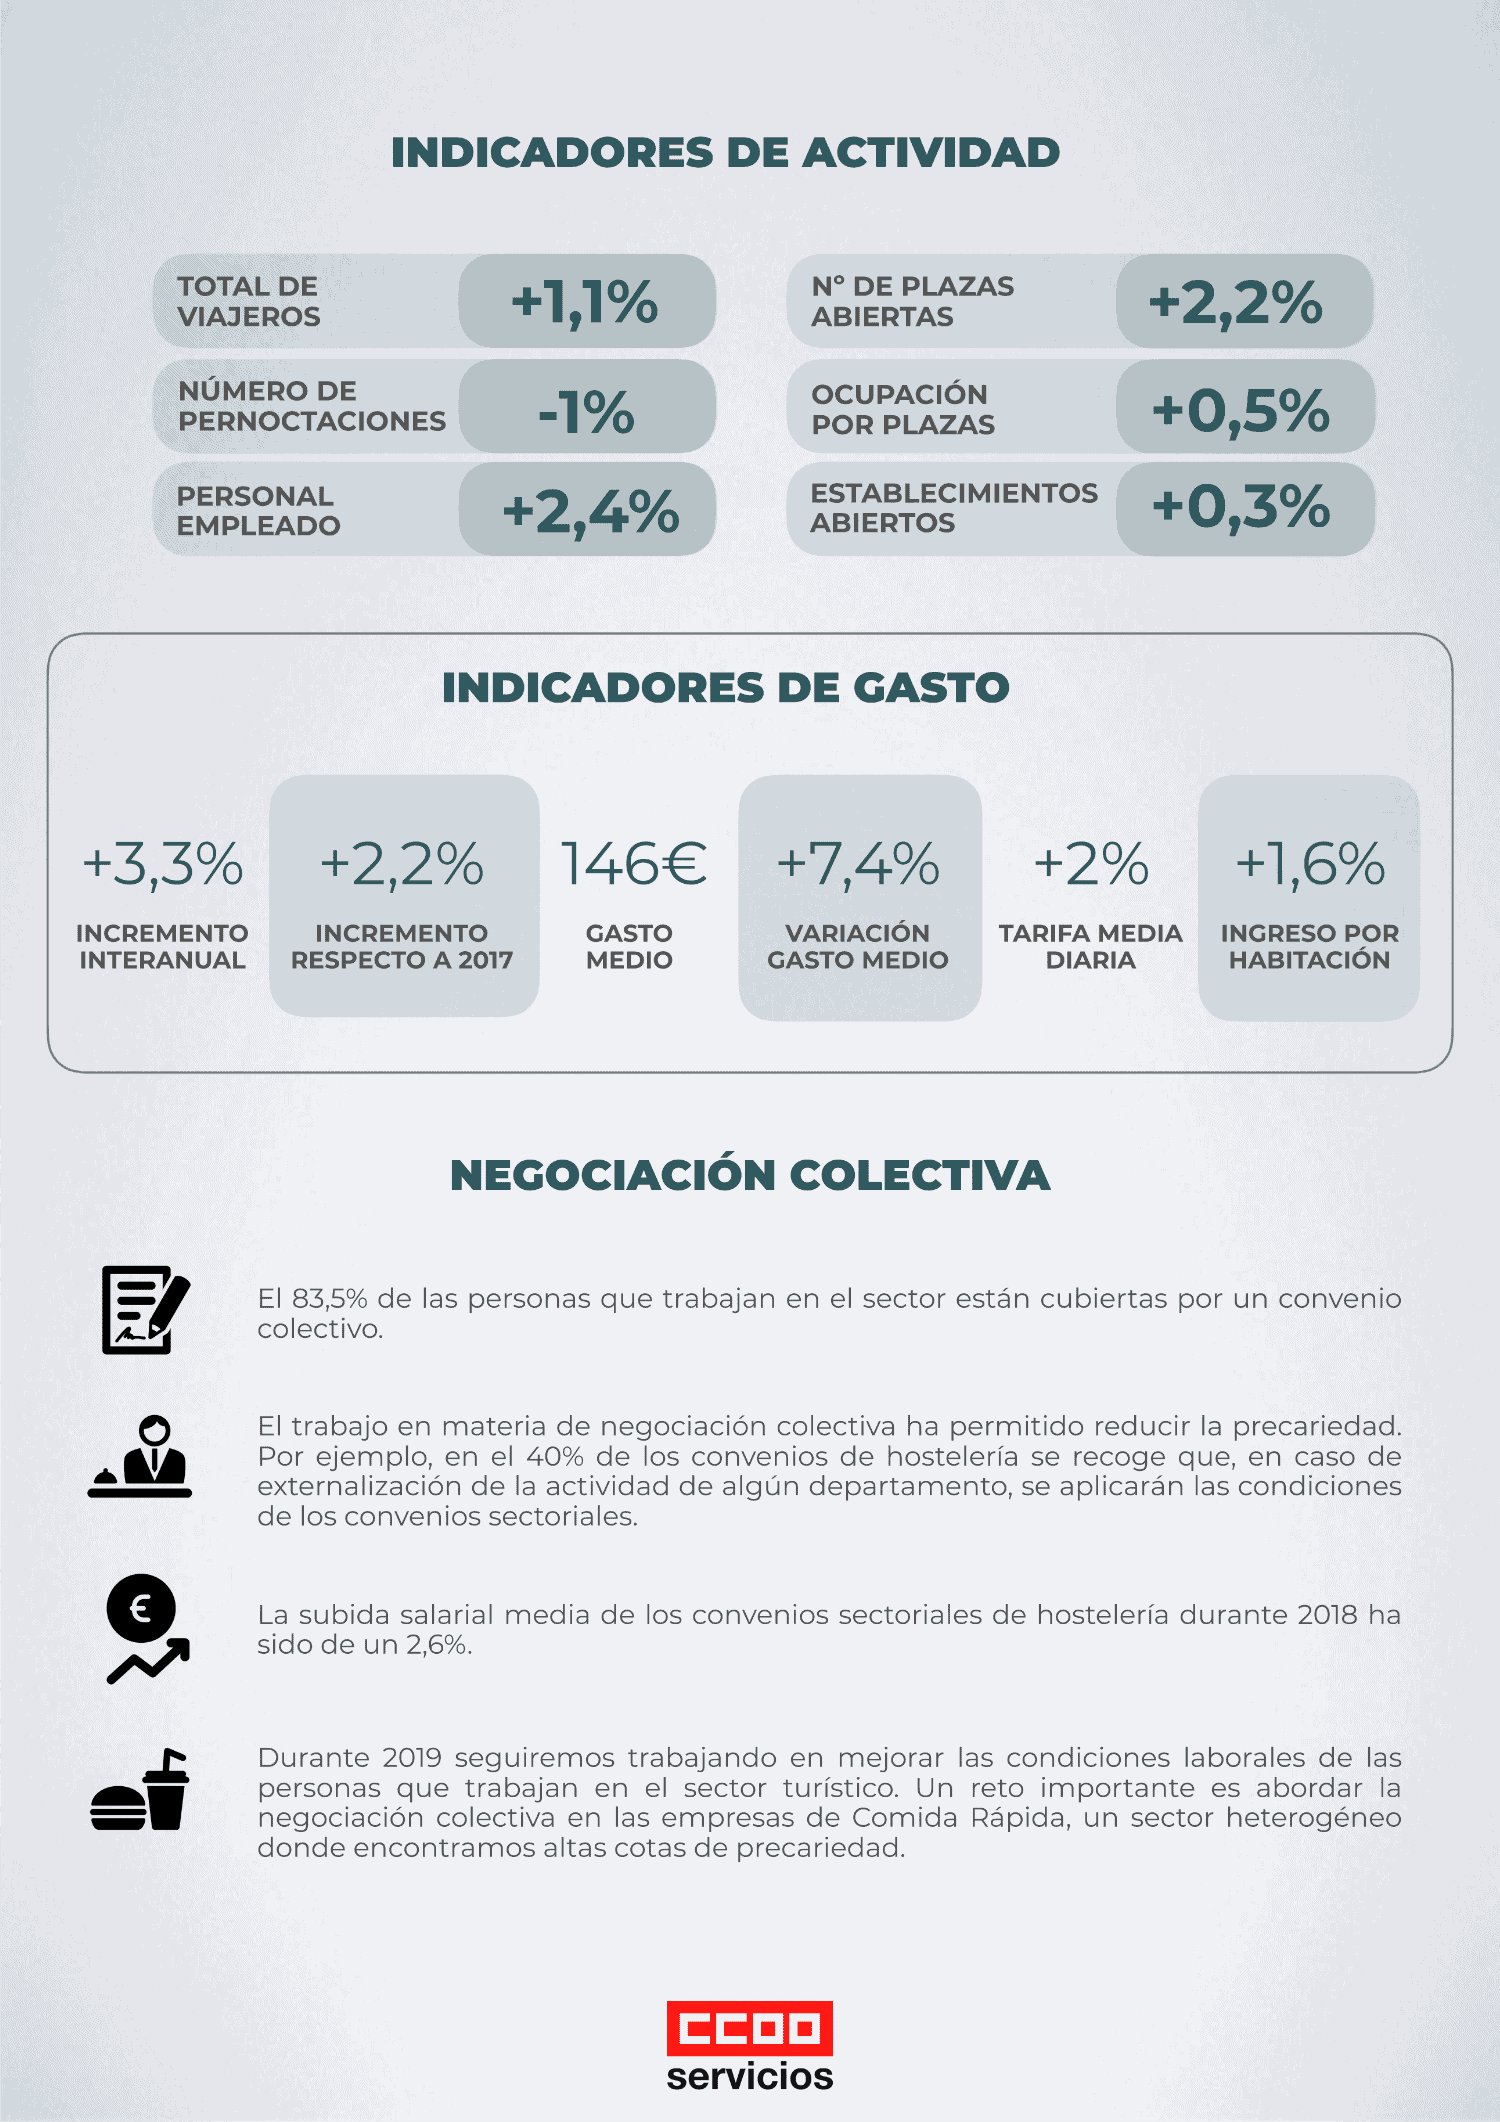 Infografia indicadores turisticos españoles